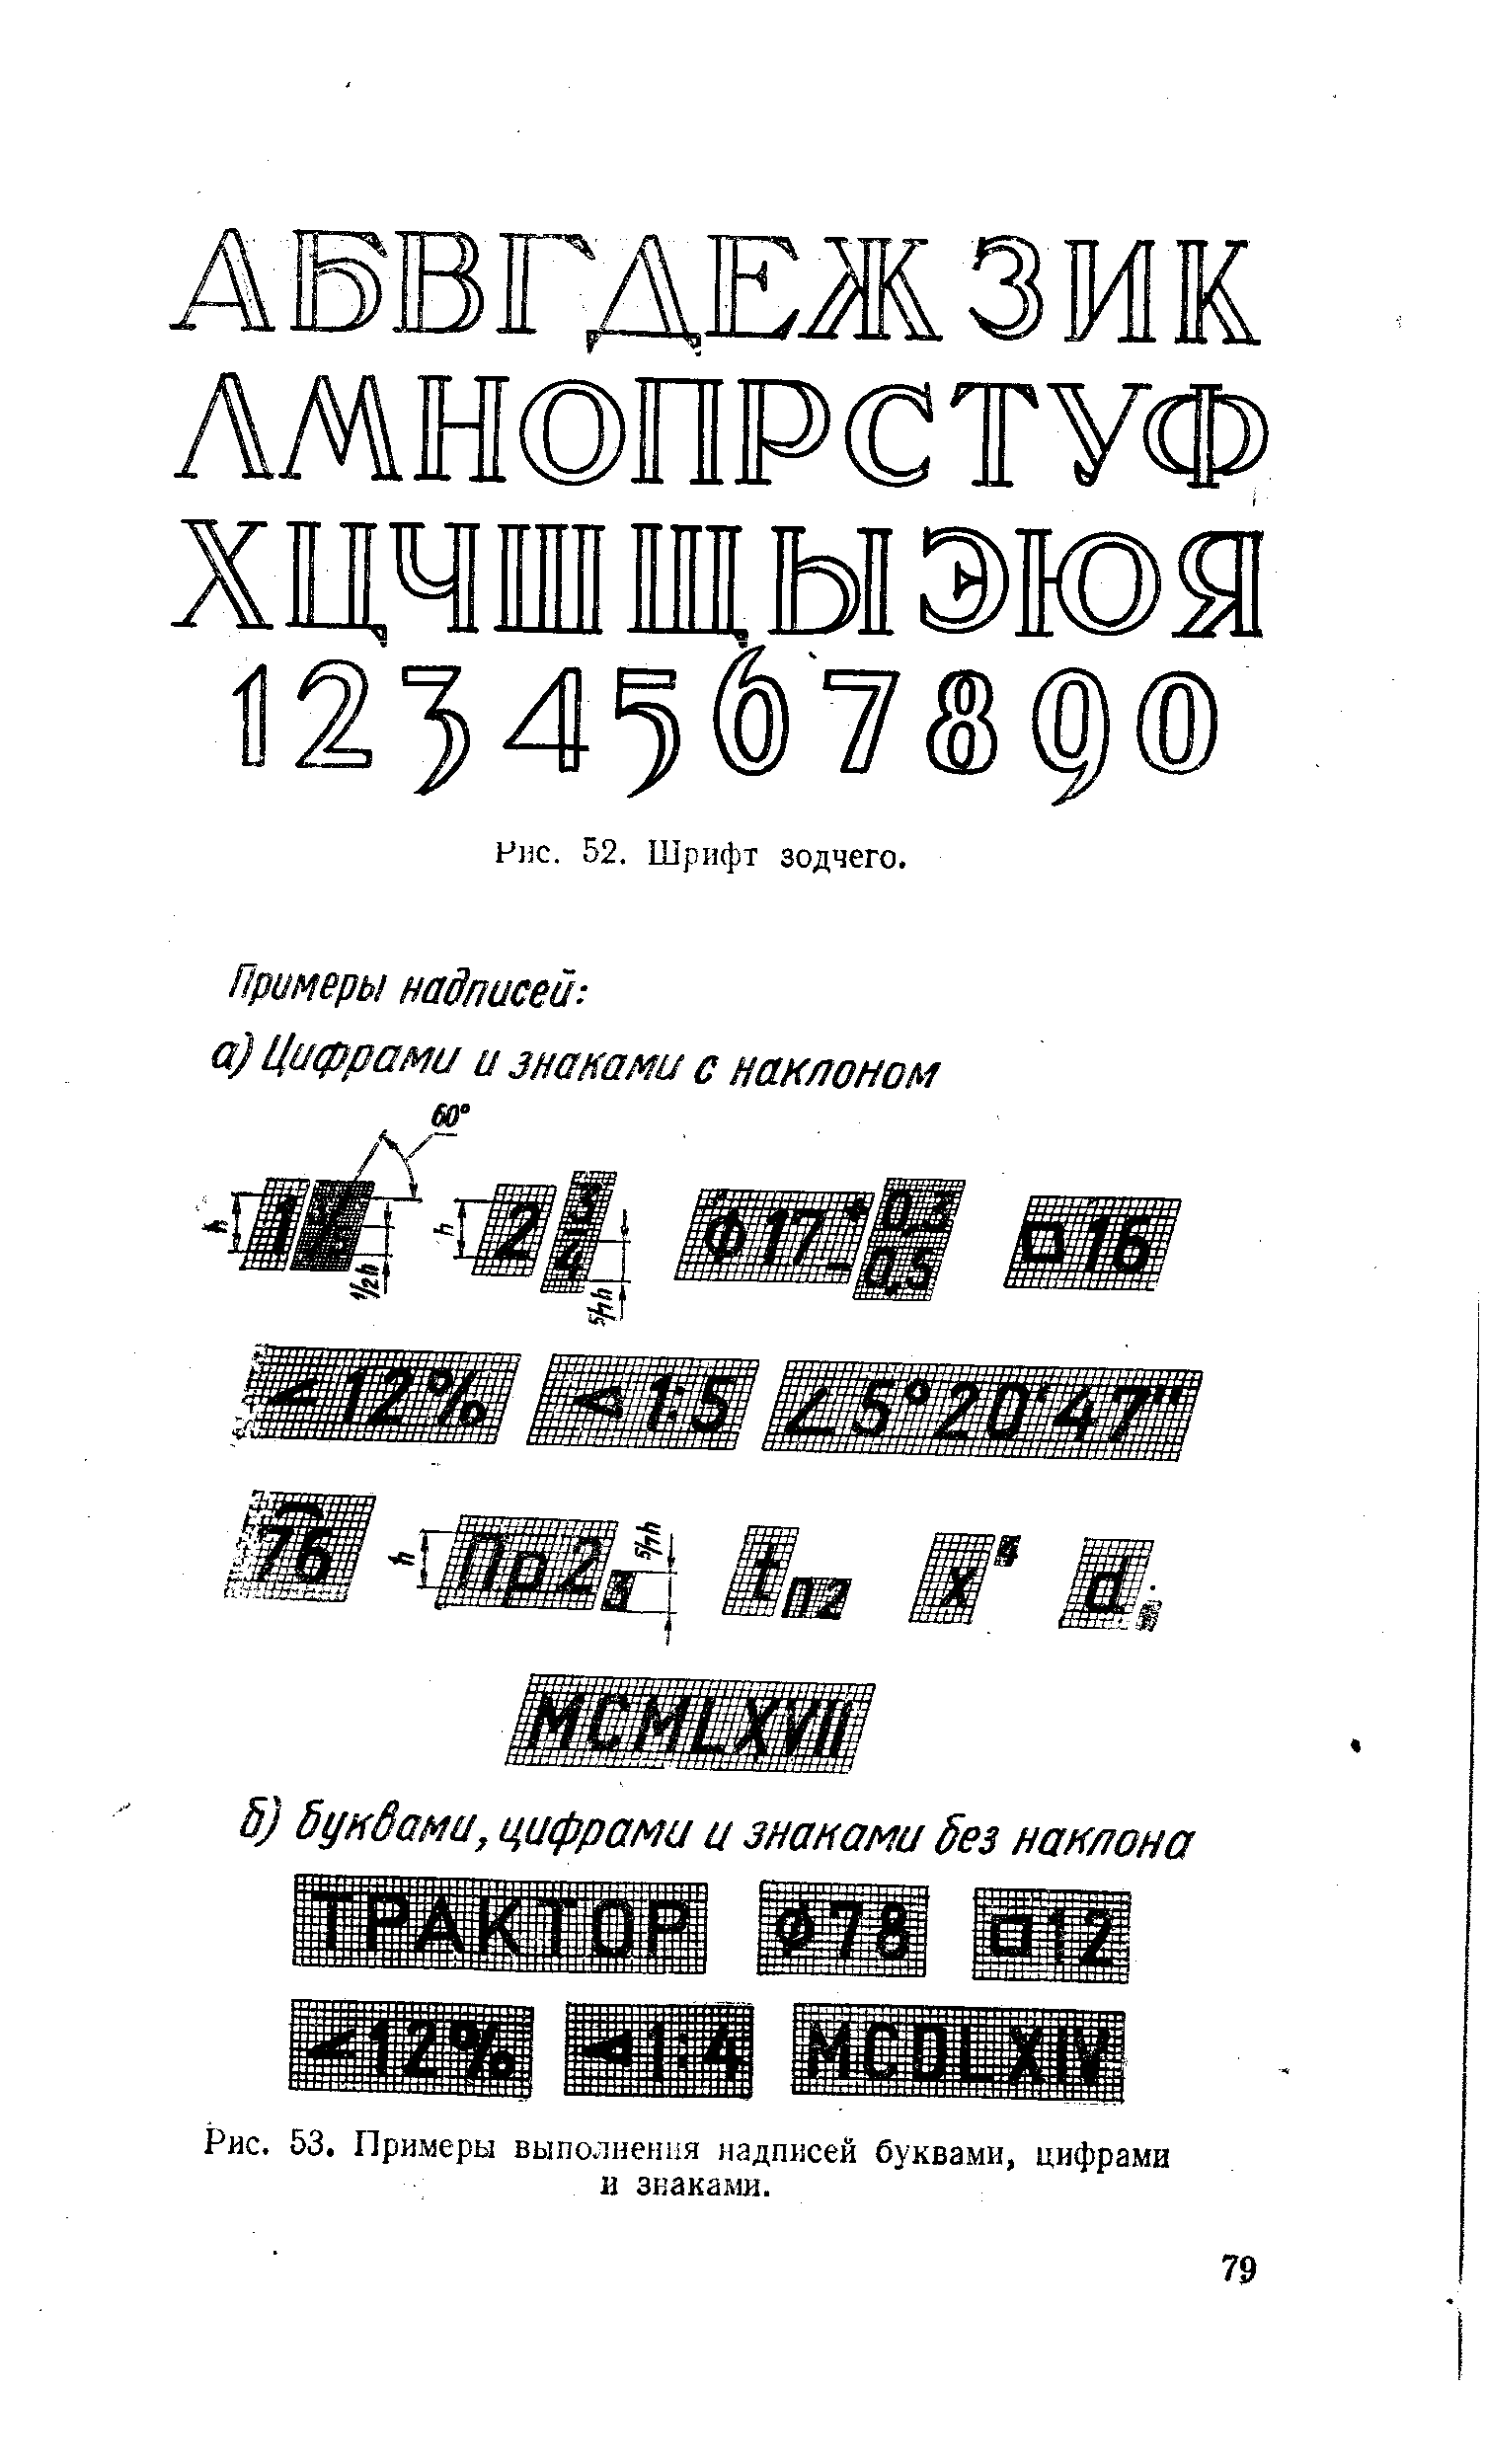 Рис. 53. Примеры выполнения надписей буквами, цифрами и знаками.
